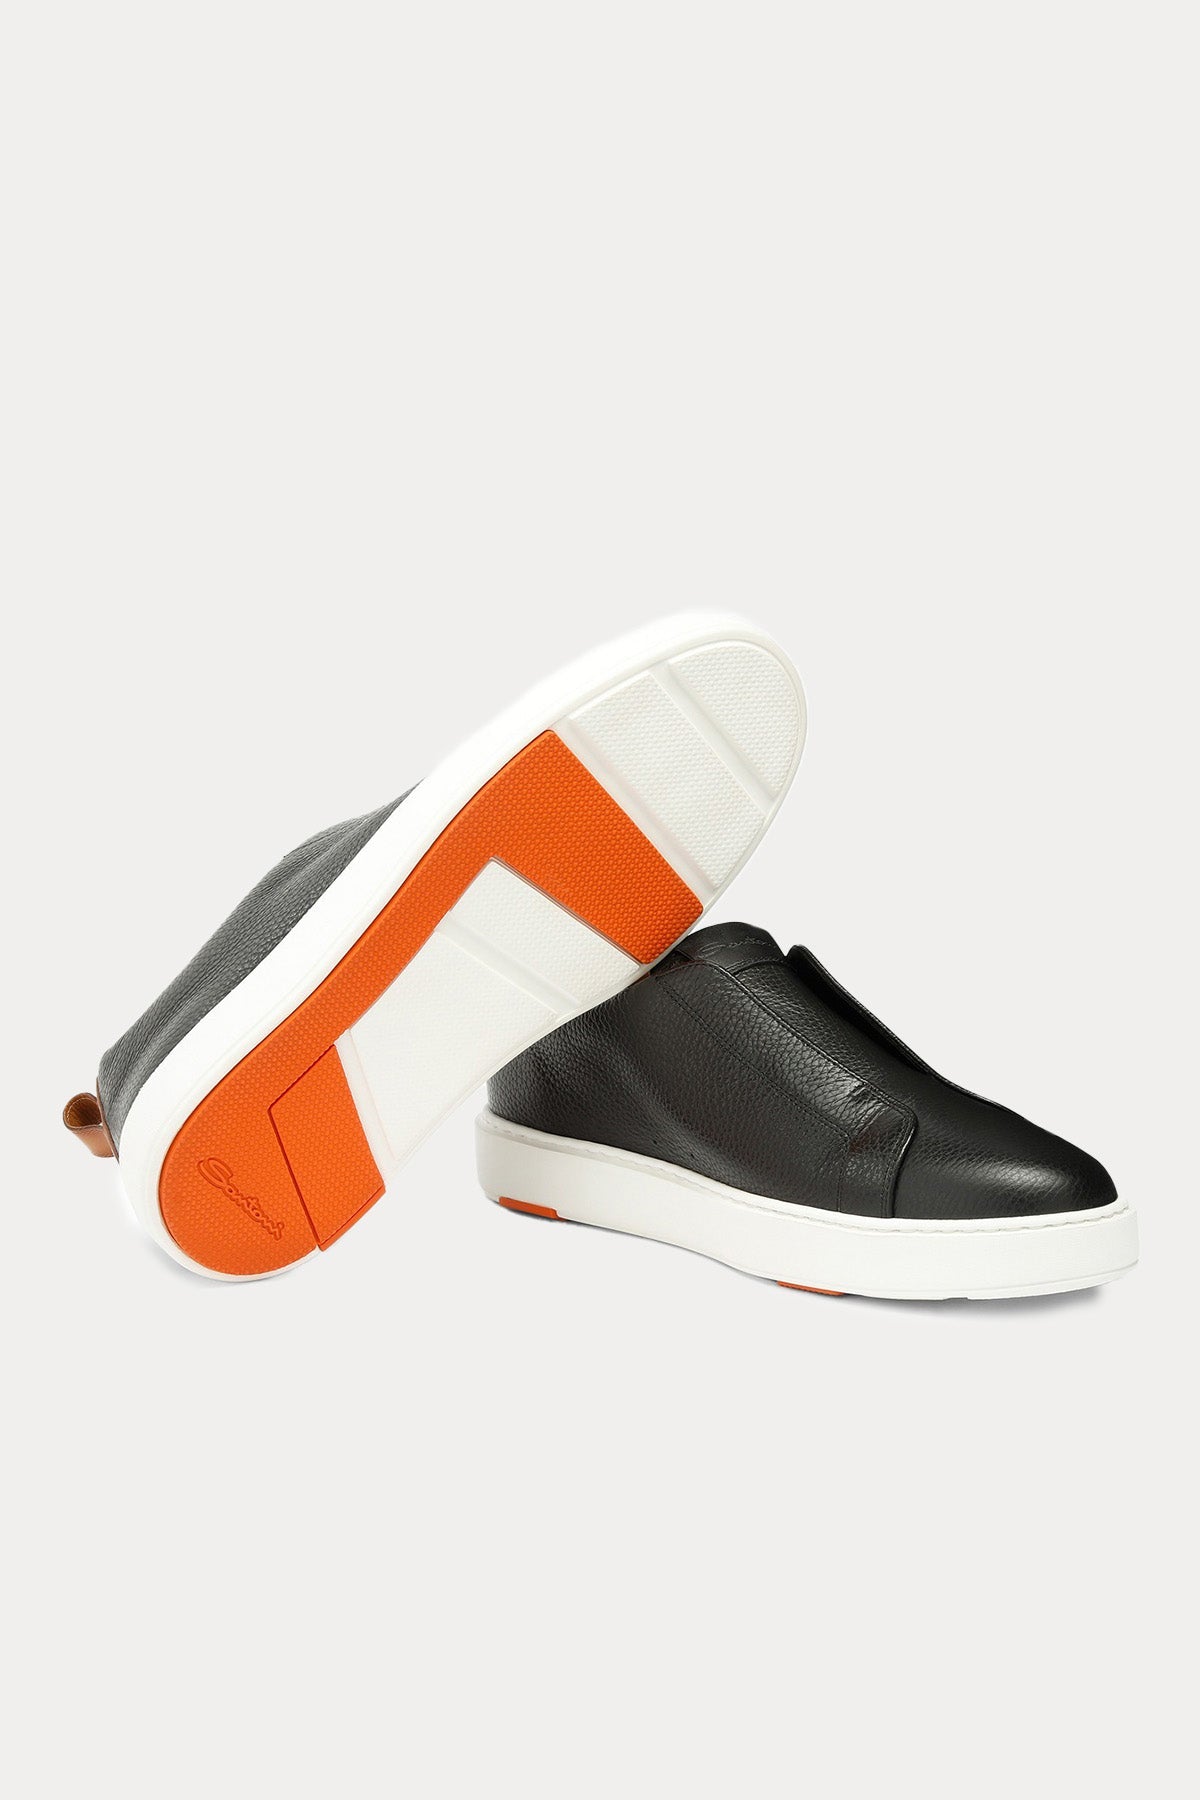 Santoni Lastik Bantlı Deri Sneaker Ayakkabı